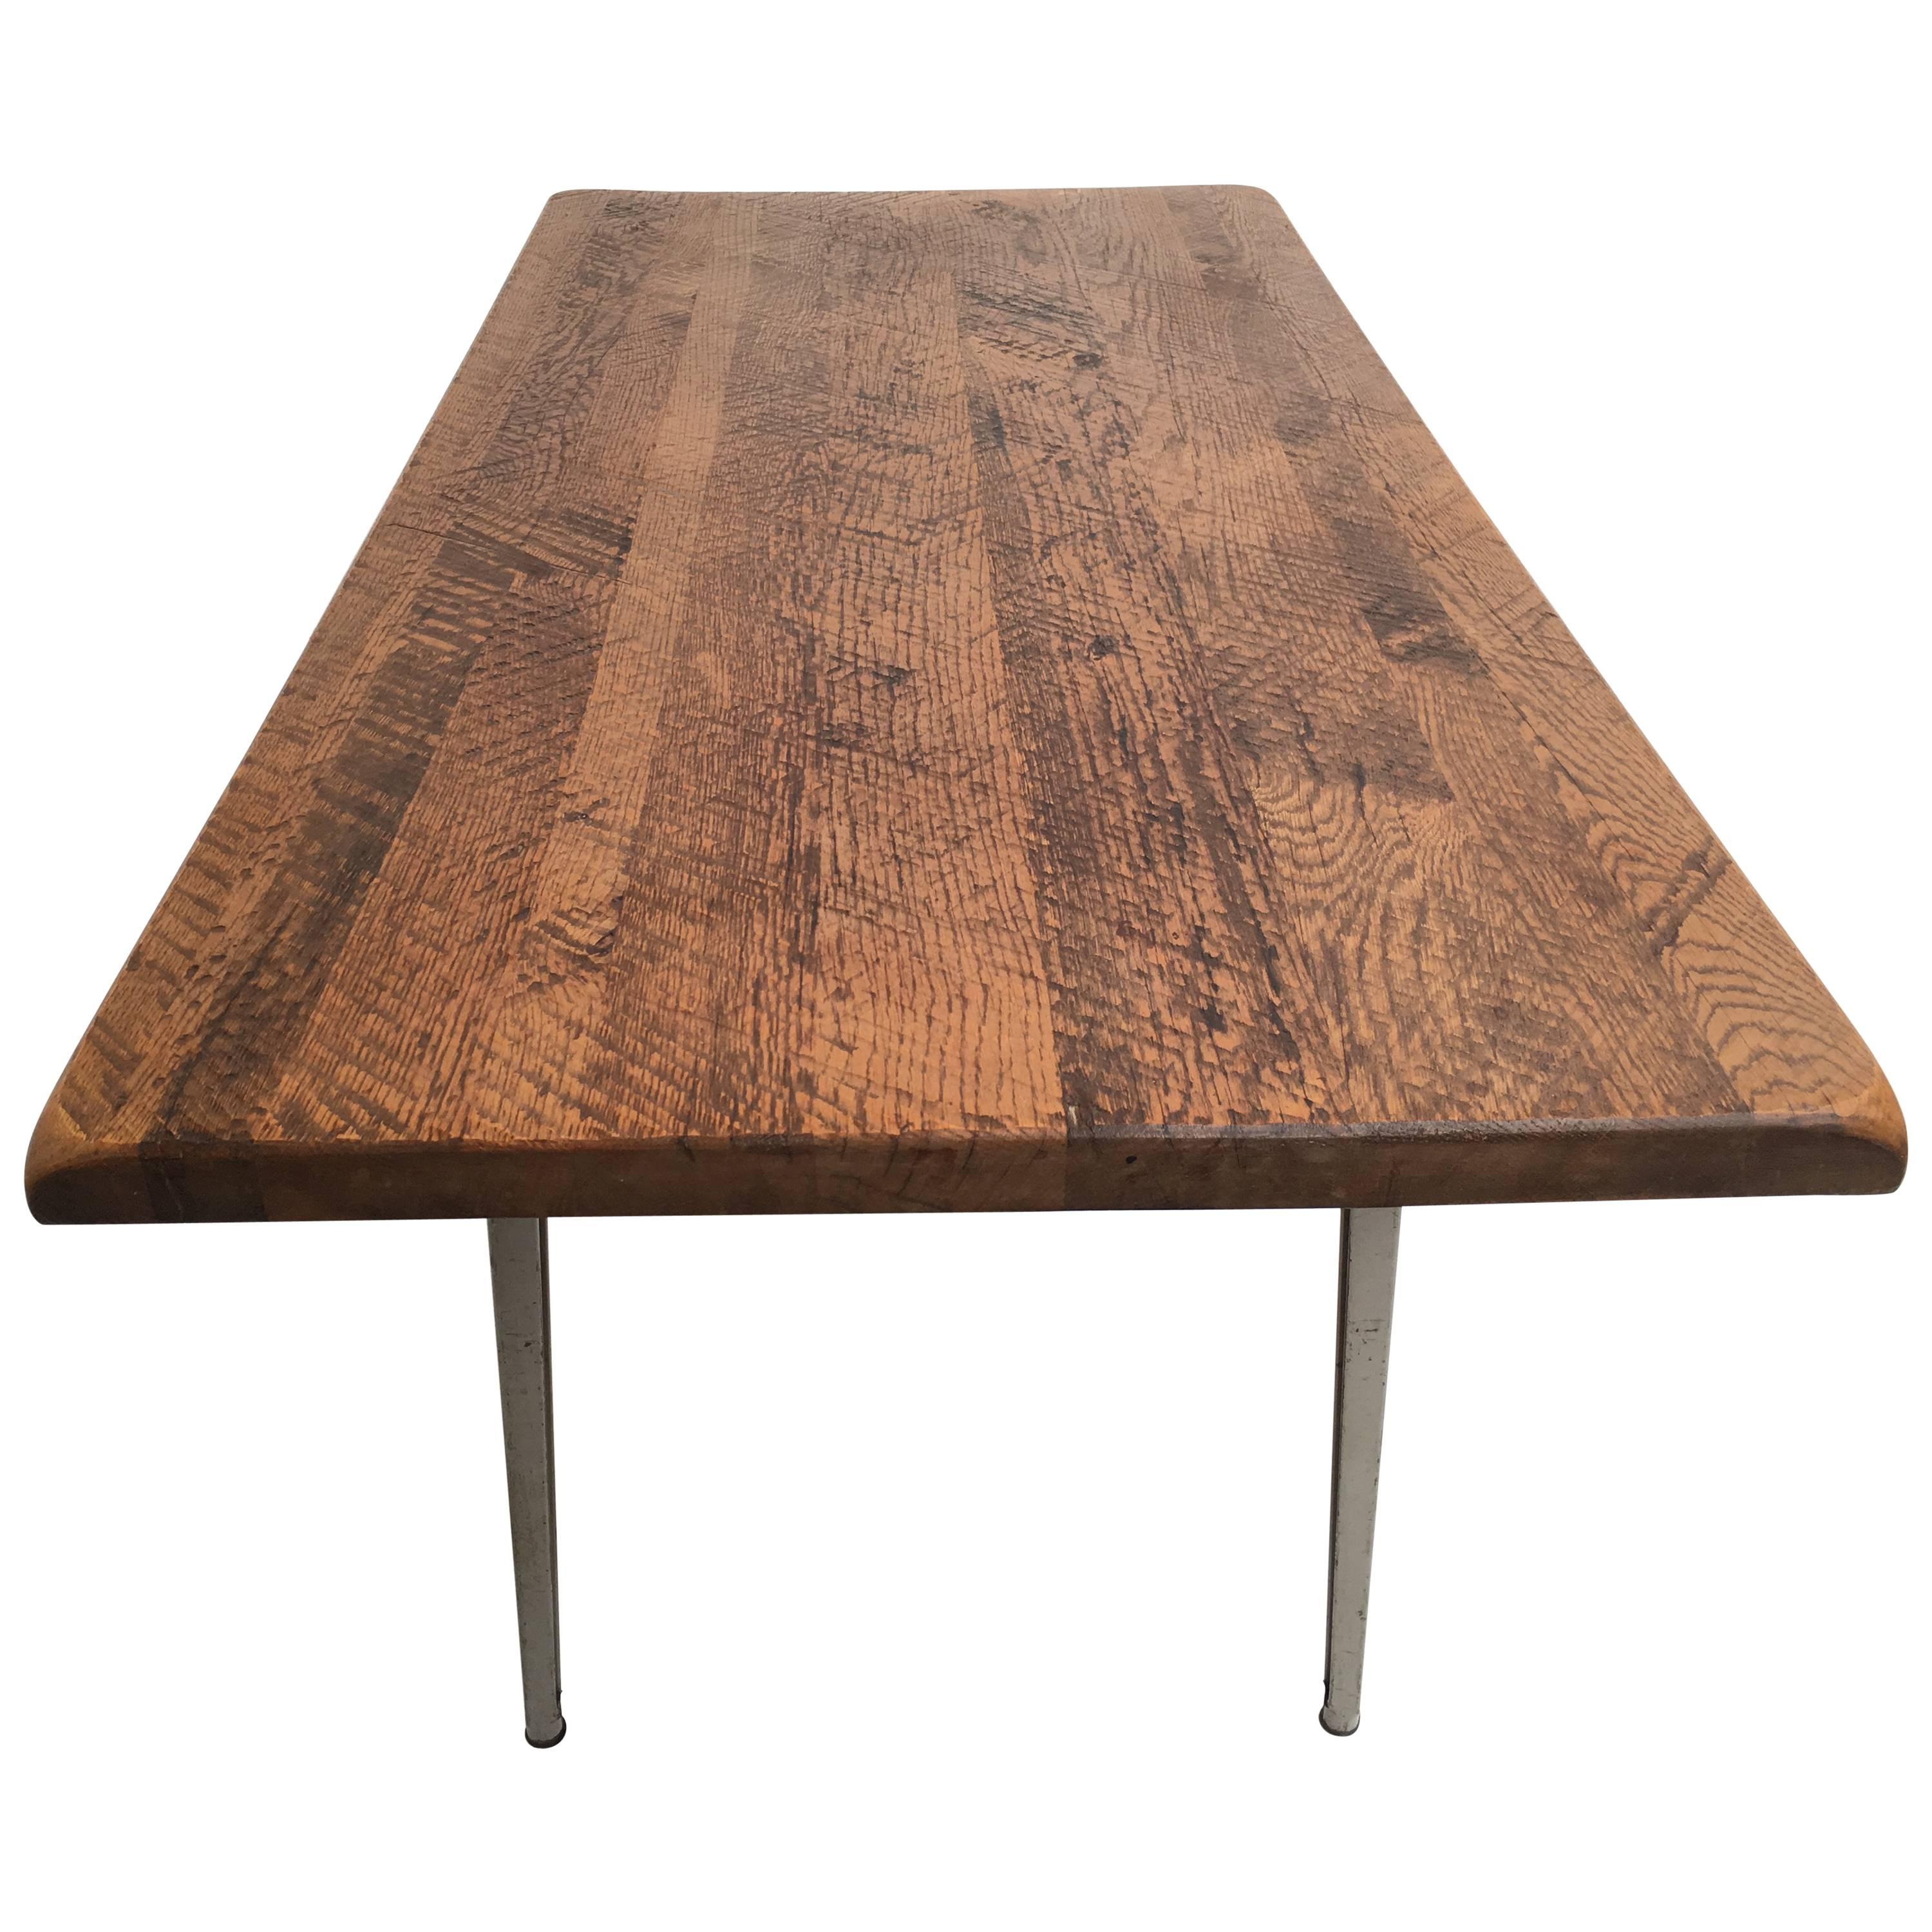 Eine aufgearbeitete rustikale Platte aus massiver Eiche wurde auf ein Friso Kramer 'Reform' Tischgestell montiert 

Der Reform-Tisch wurde von Friso Kramer für Ahrend/De Cirkel entworfen und passt zu seinem berühmten Revolte-Stuhl, der 1953